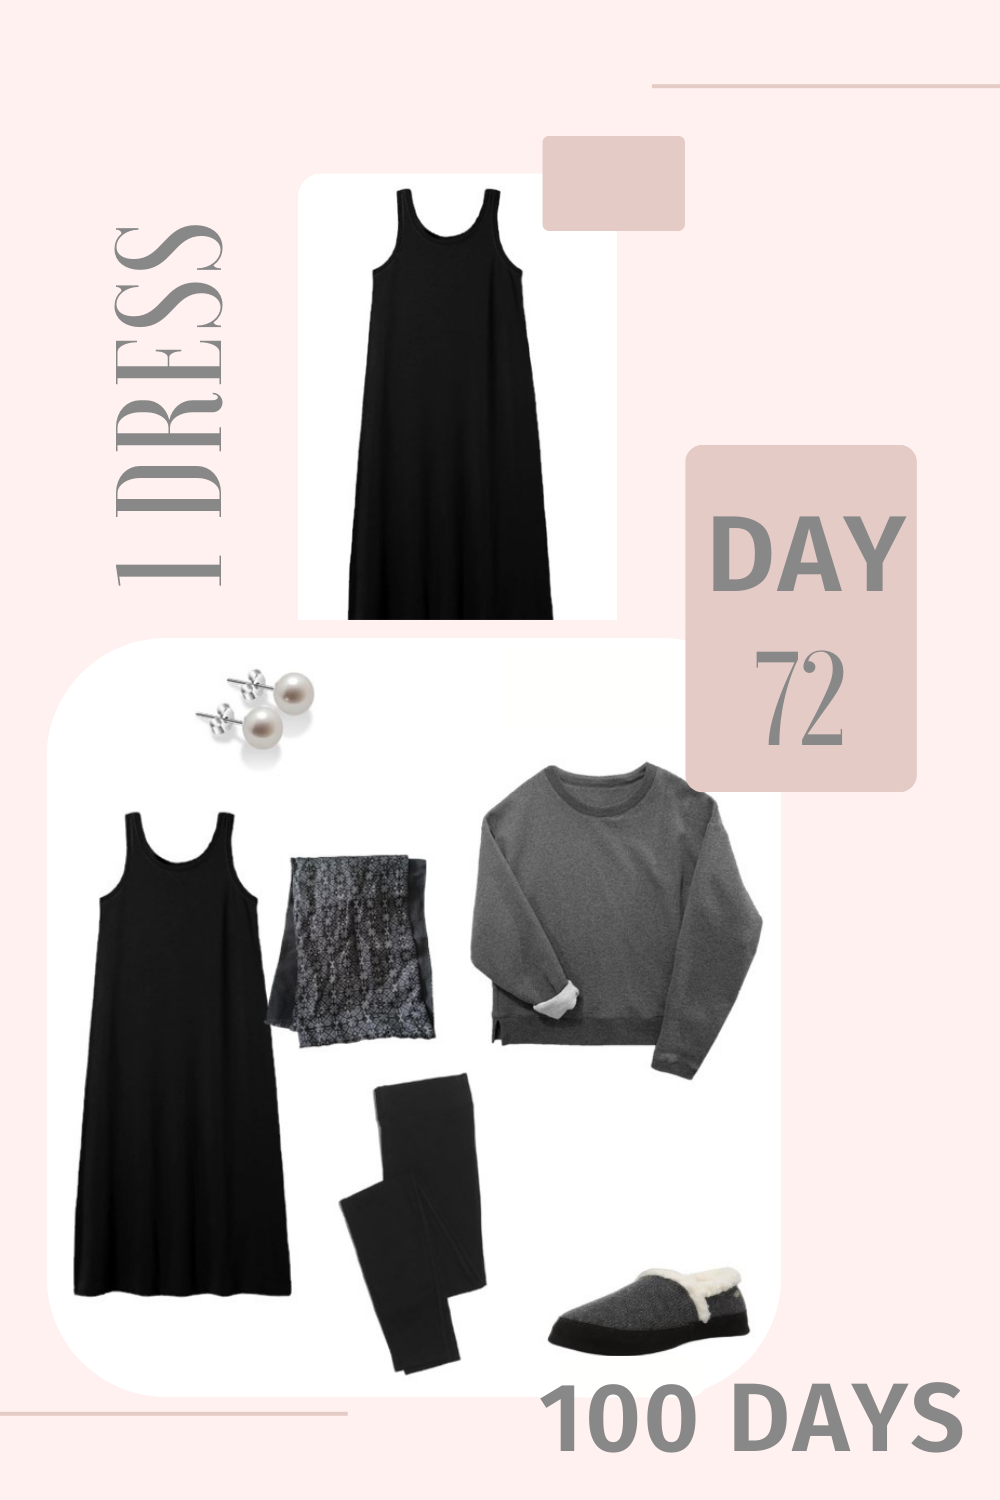 1 Dress 100 Days - Day 72